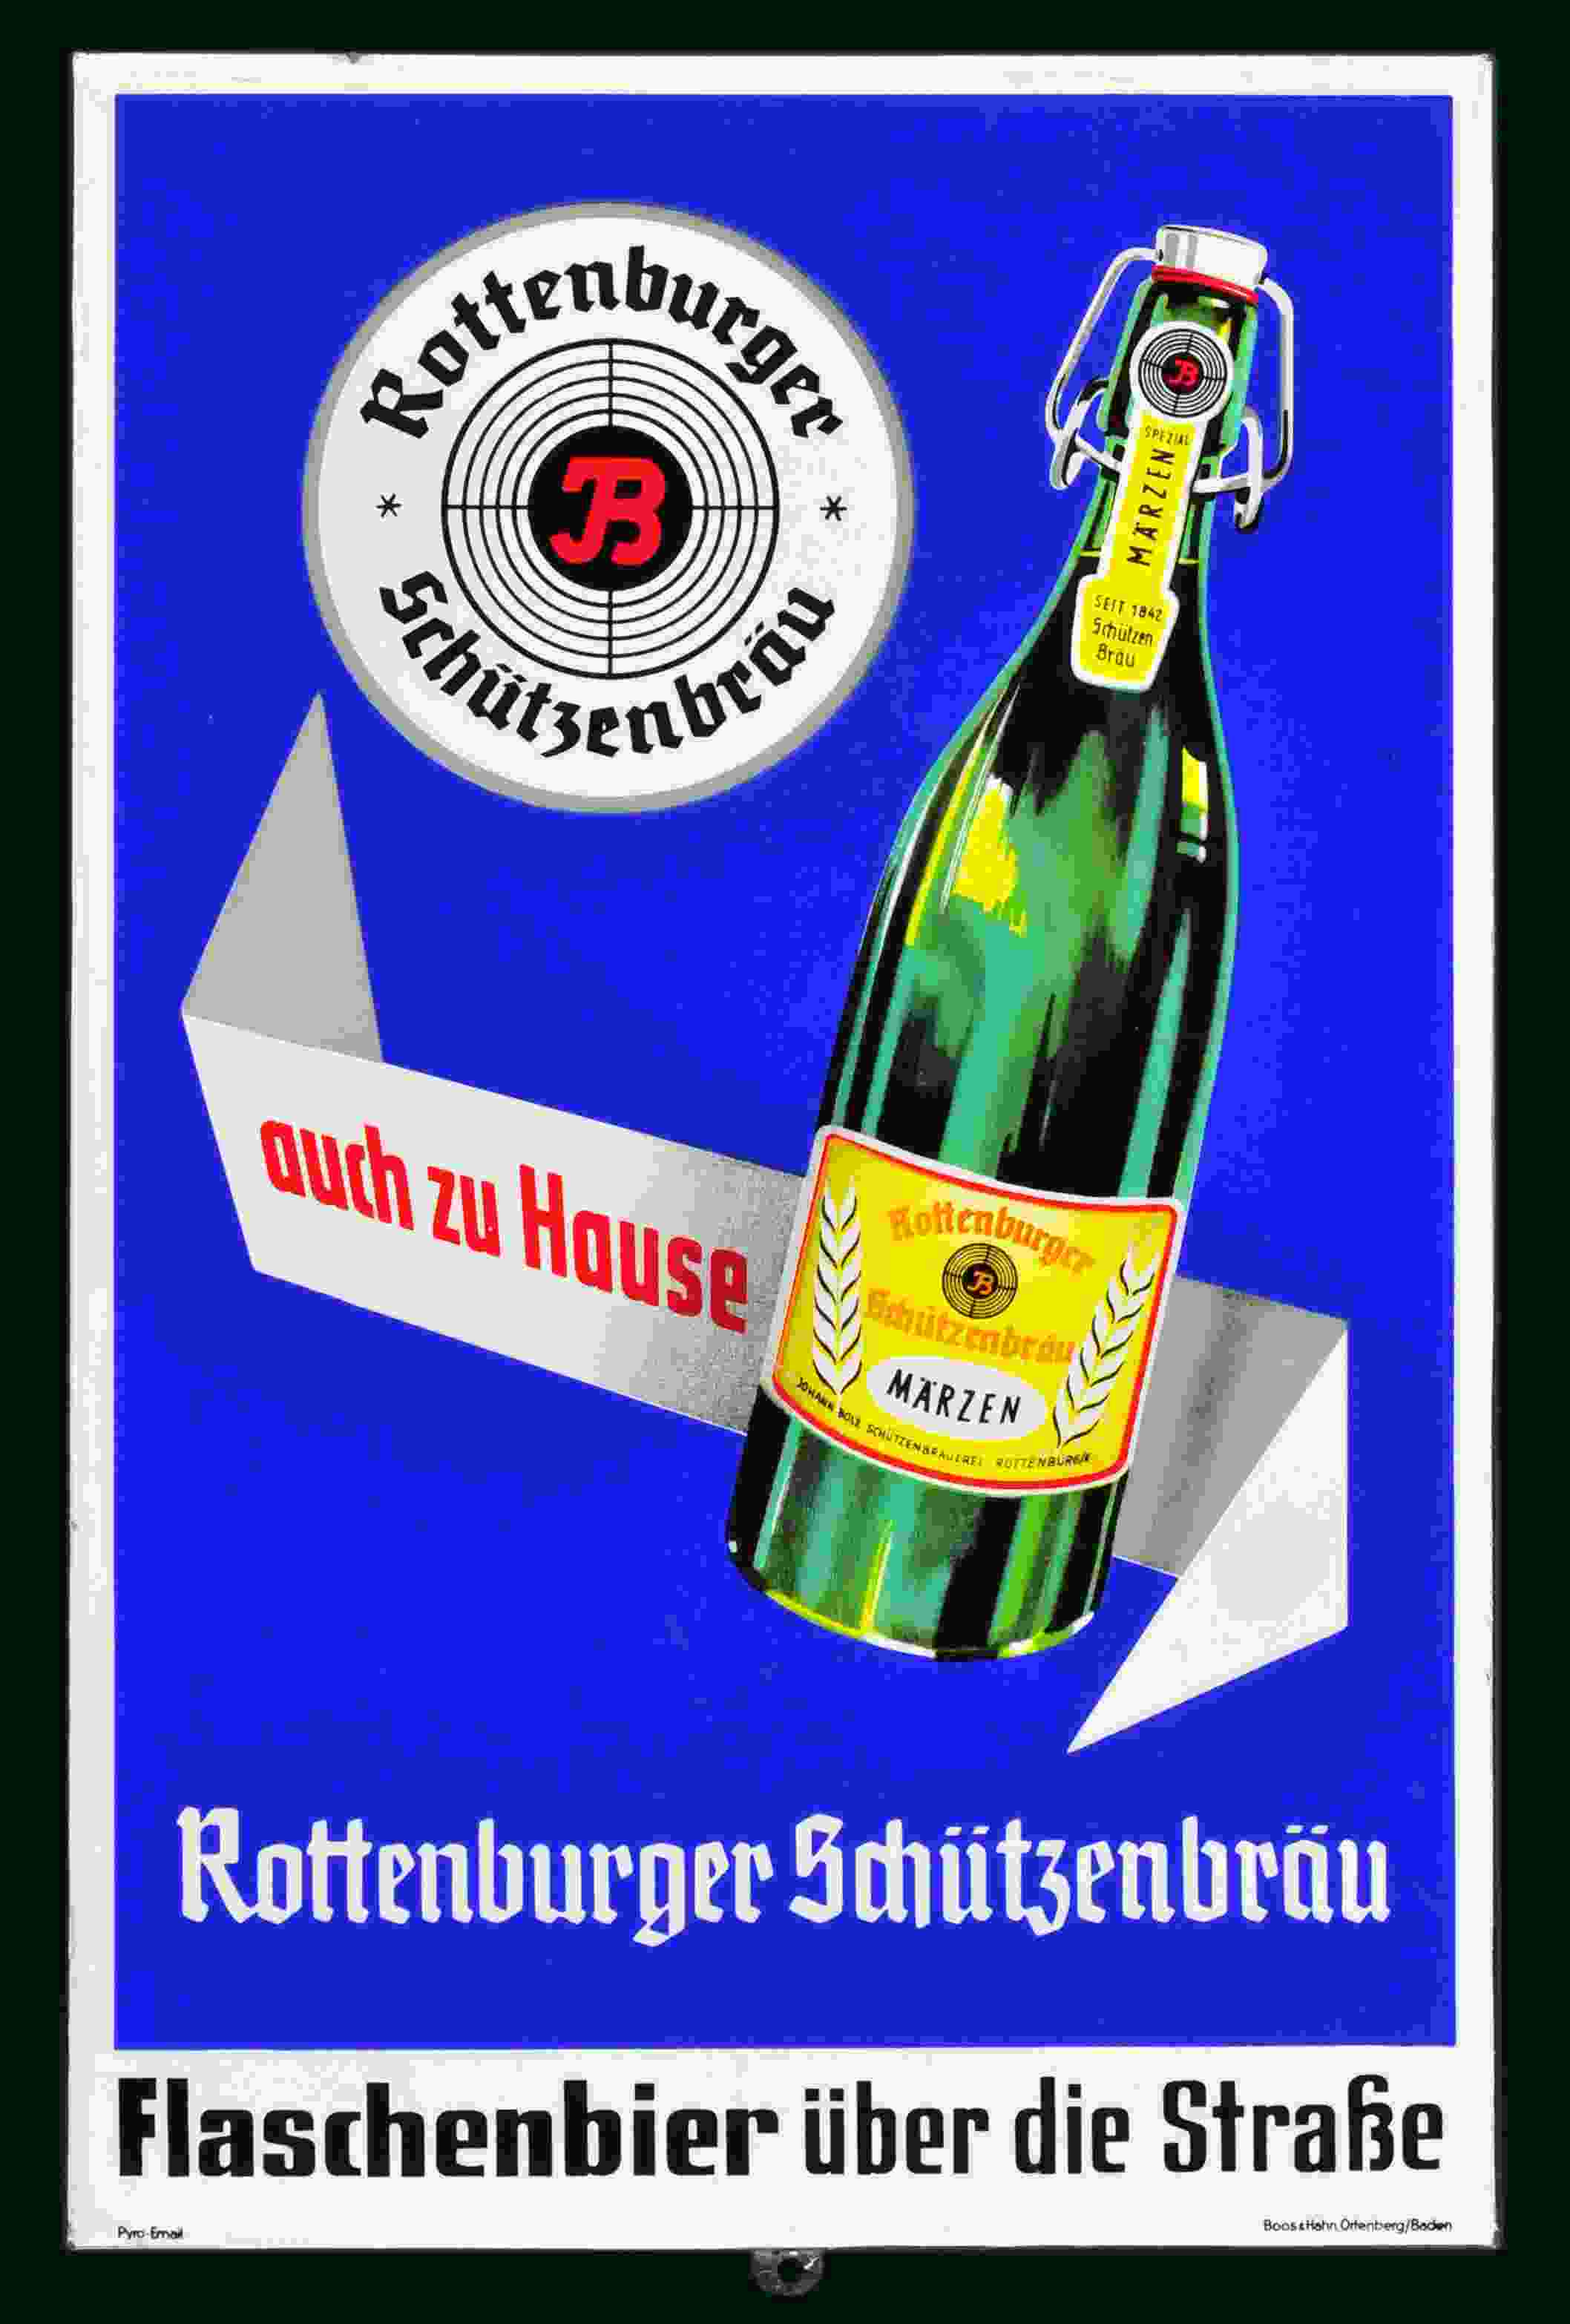 Rottenburger Schützenbräu 